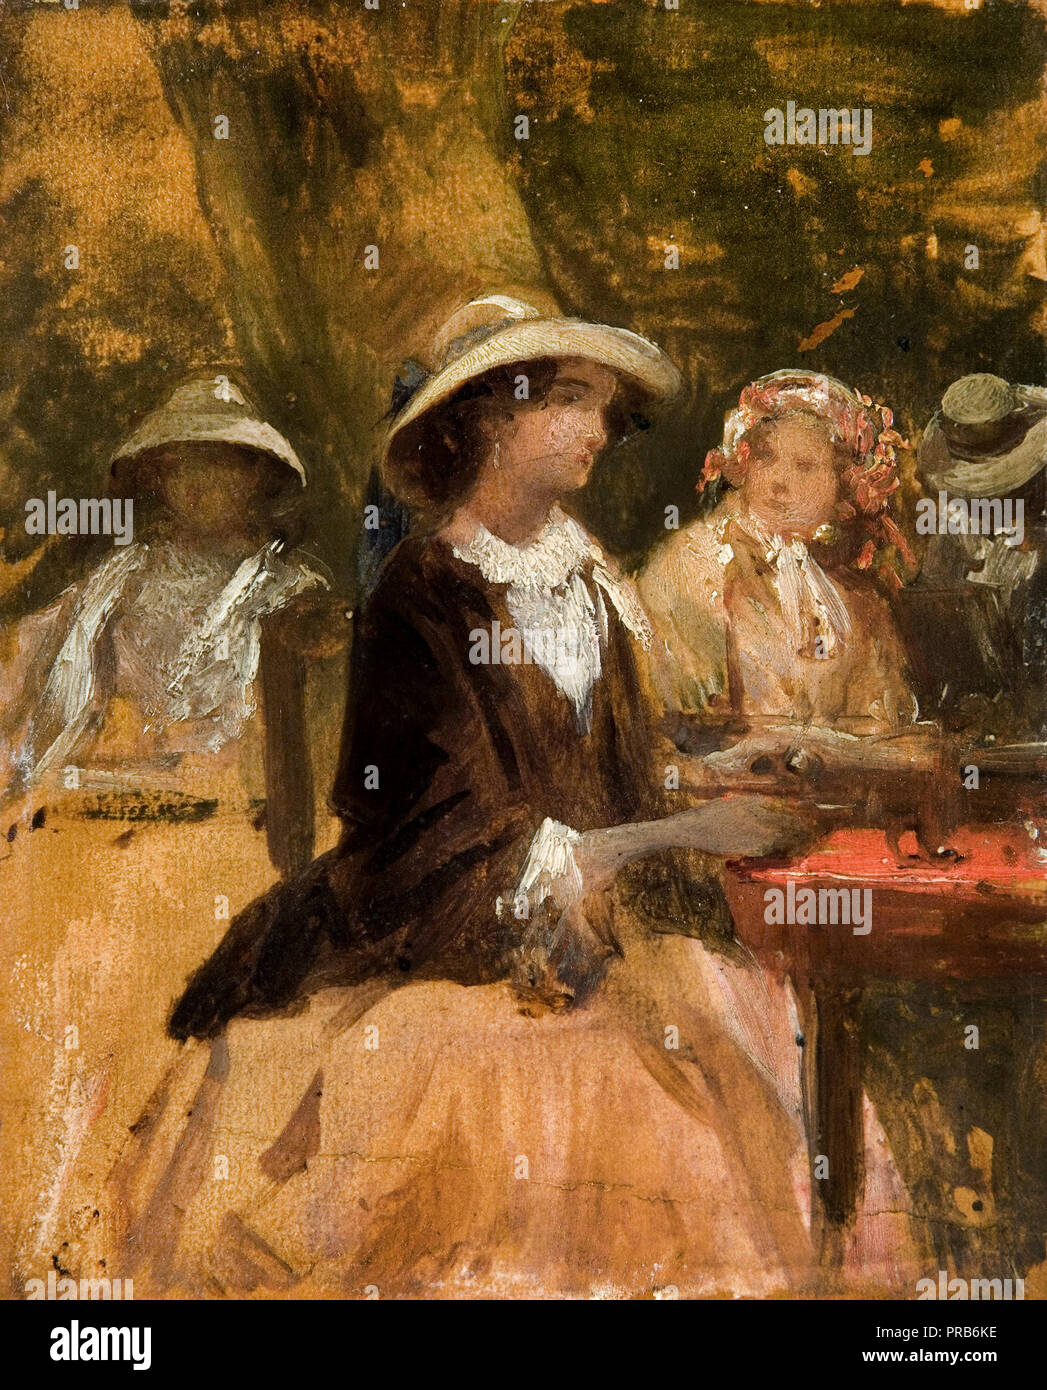 Josef Navratil, dans le restaurant du jardin, vers 1850 huile sur toile, Galerie Nationale à Prague, République tchèque. Banque D'Images